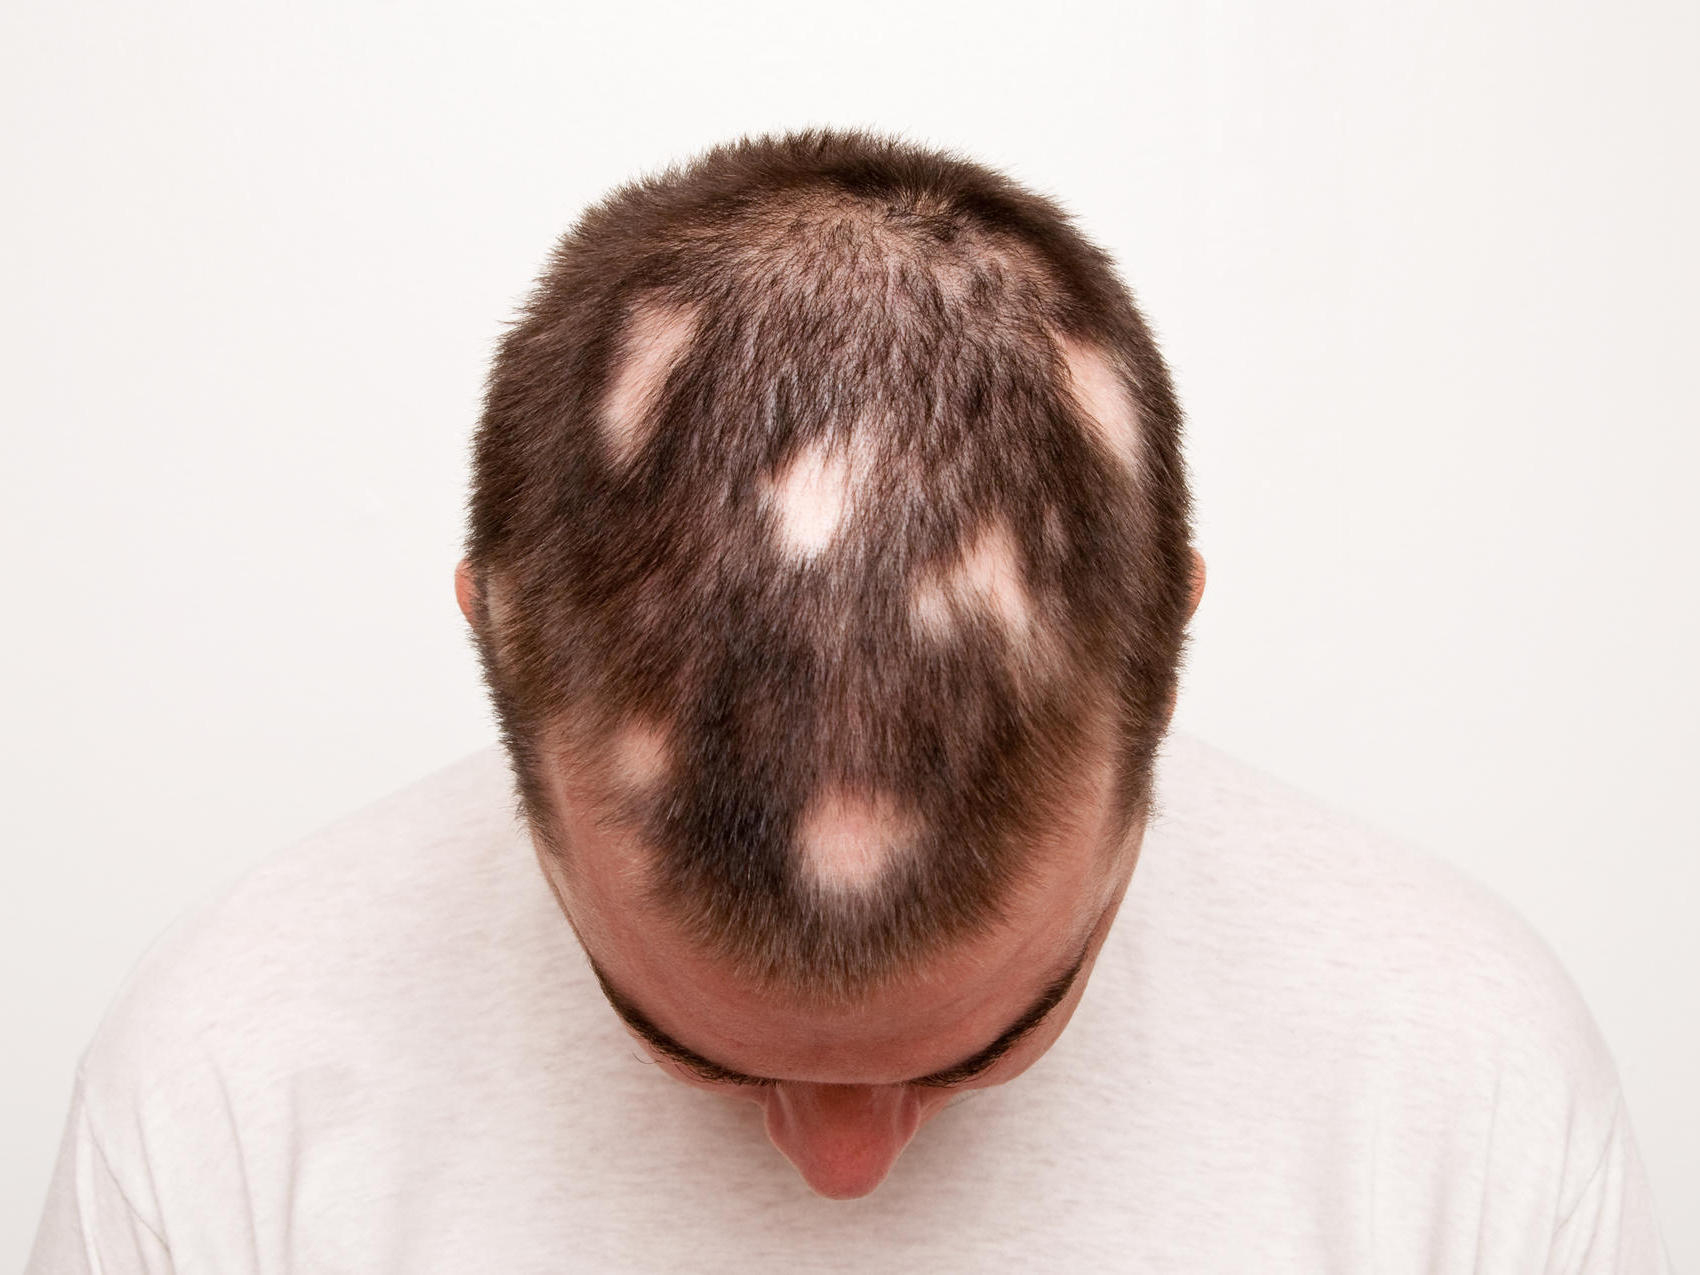 Kahle Stellen Am Kopf: Alles Zu Kreisrundem Haarausfall bei Wie Viele Haare Hat Man Auf Dem Kopf